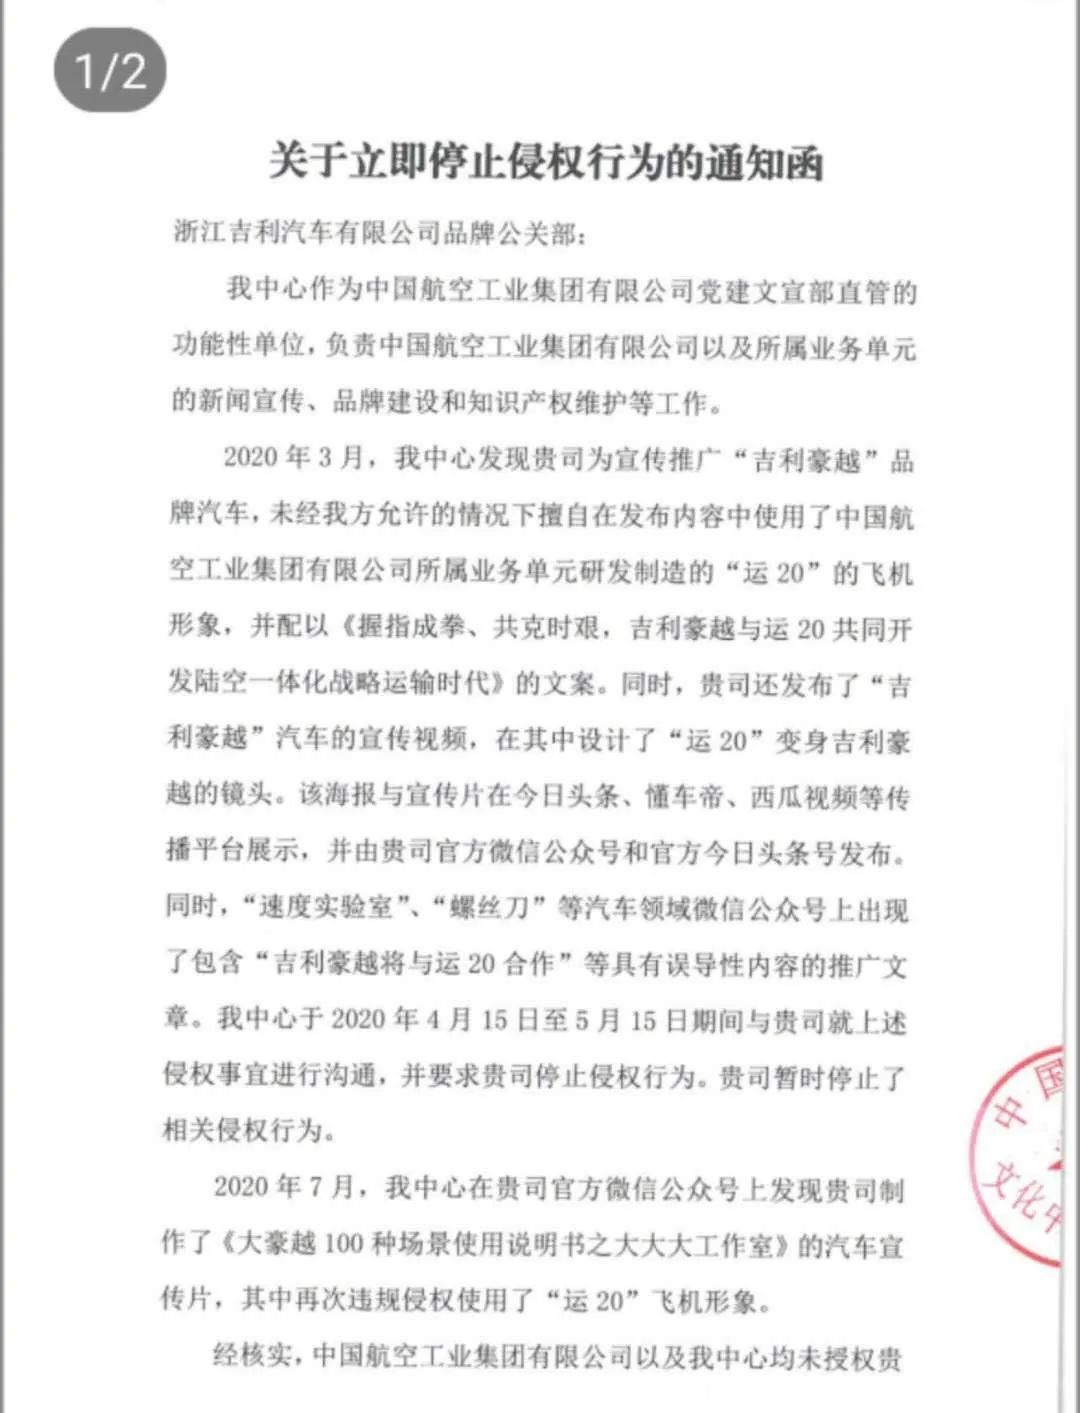 擅自使用“运-20” 中国航空工业要求吉利汽车立即停止侵权行为